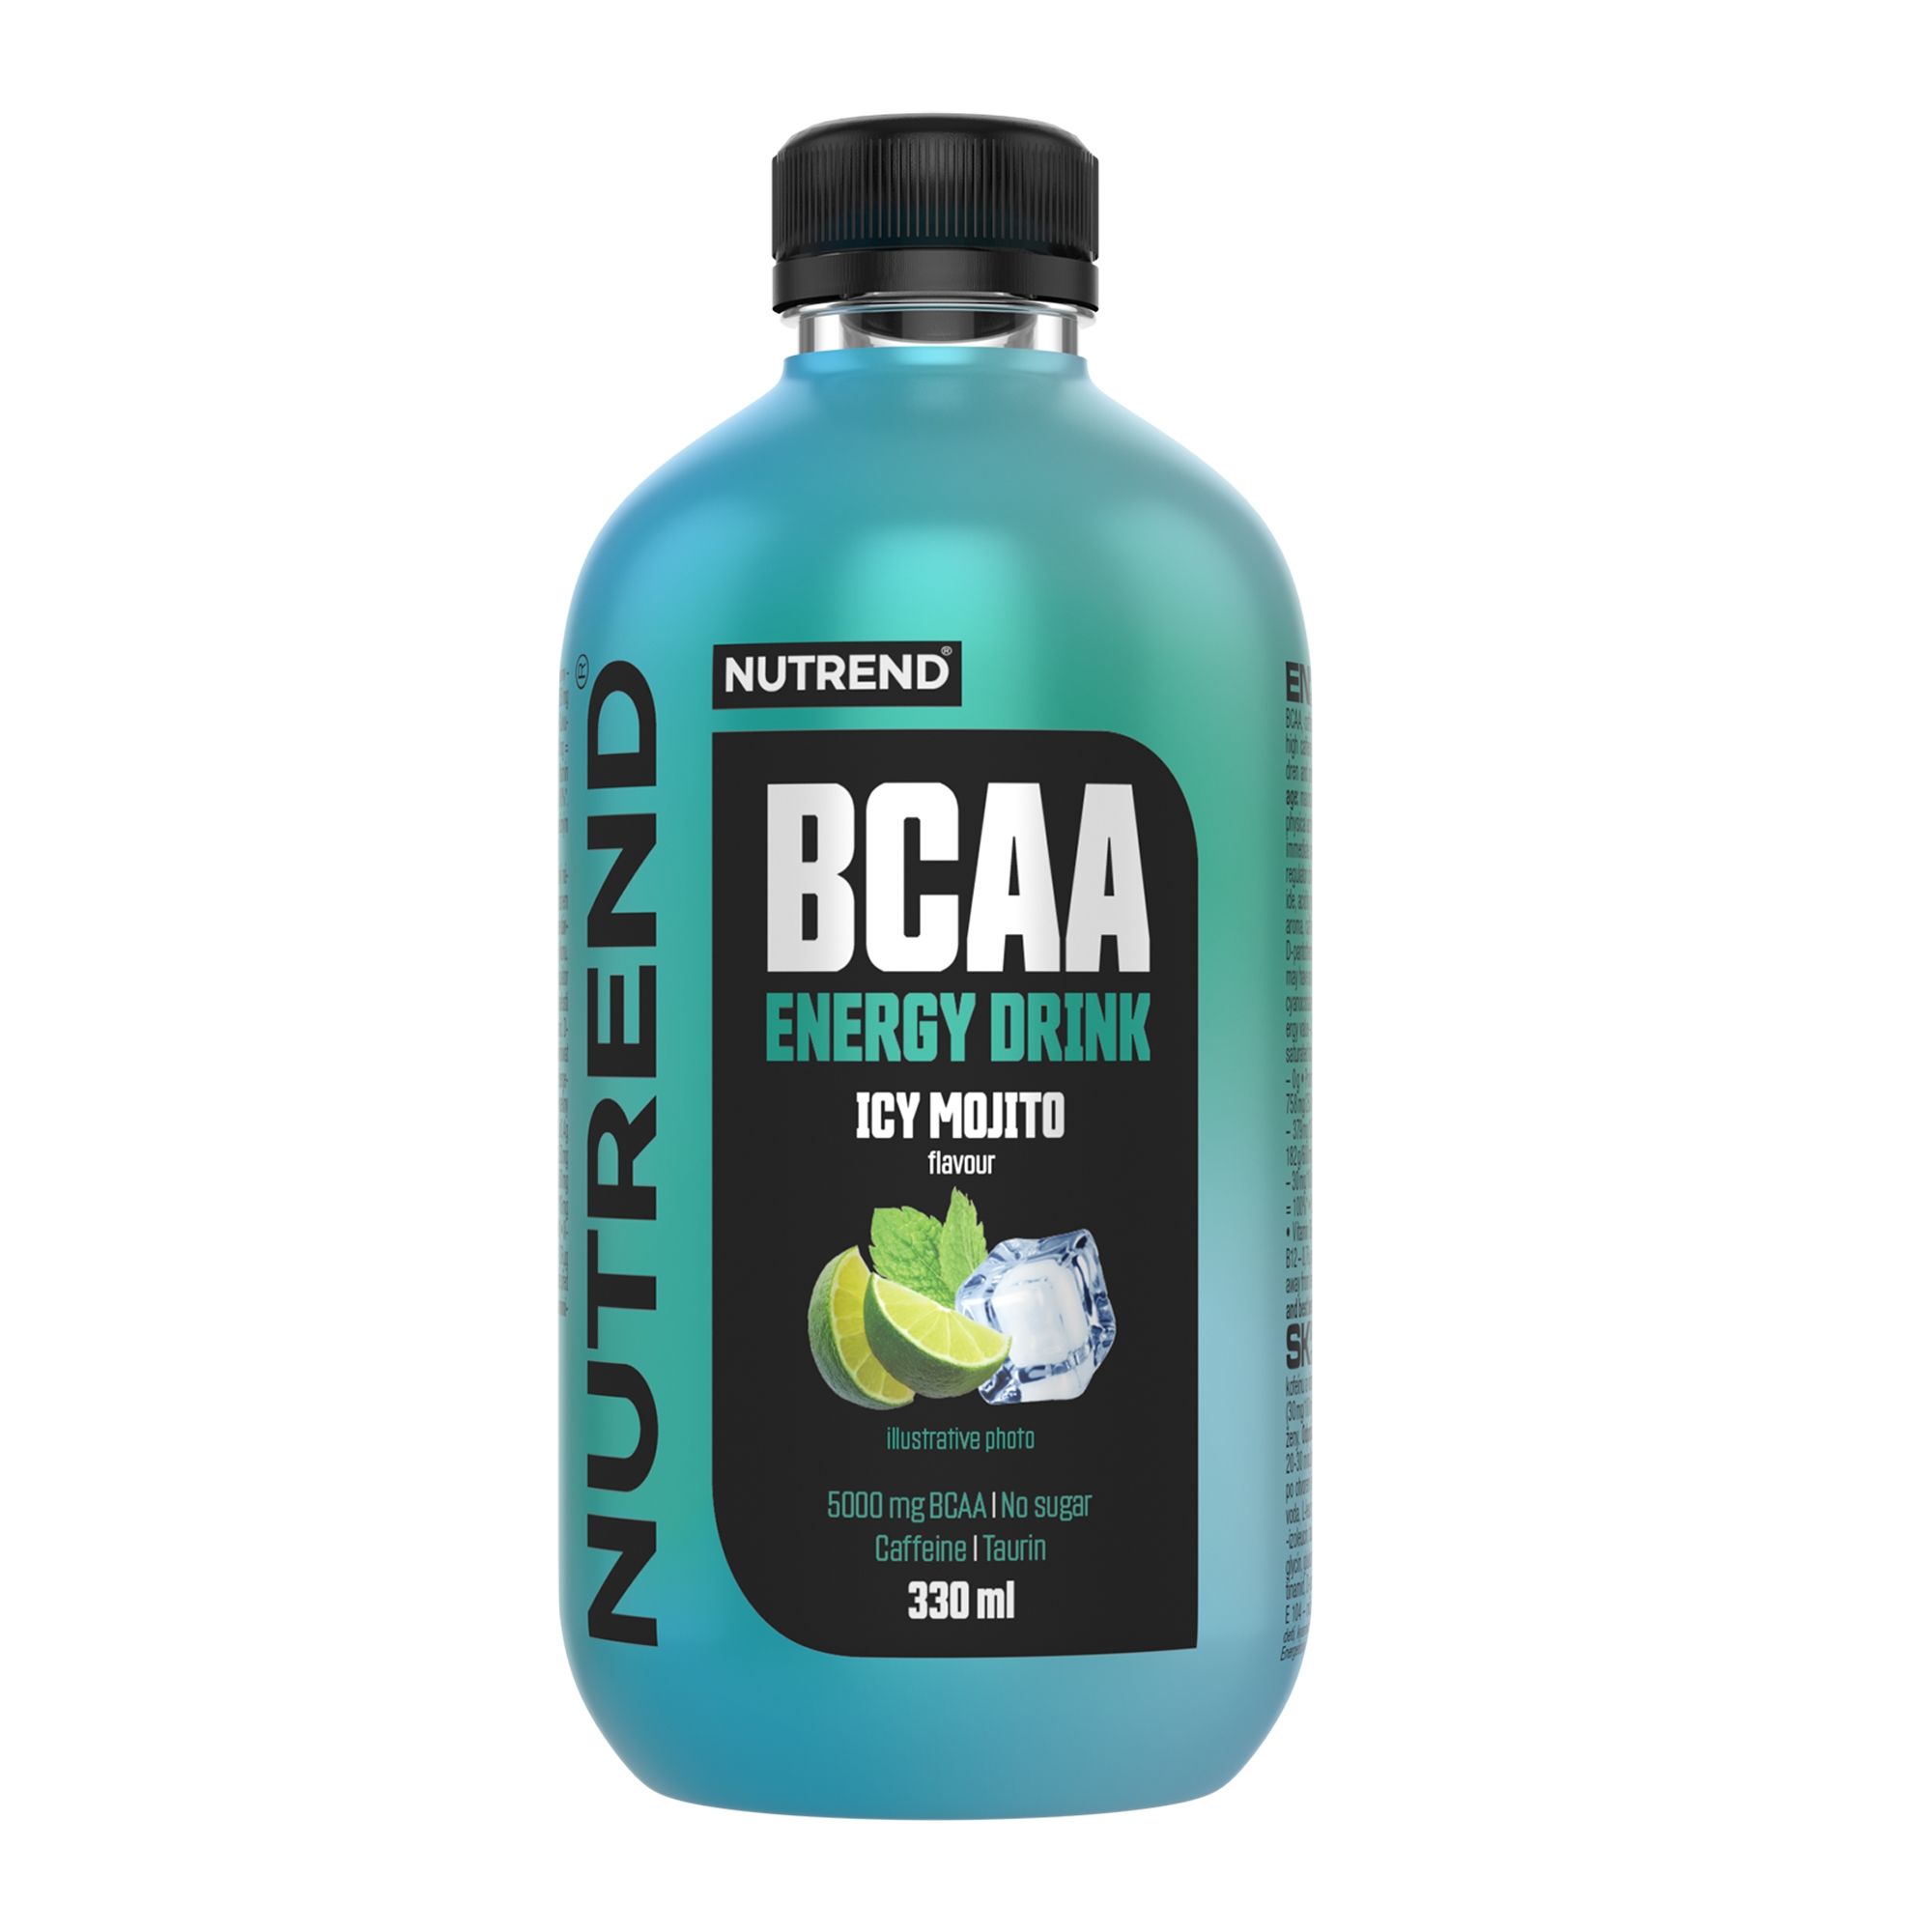 NUTREND BCAA Energy Drink, 330 ml icy mojito Typ: nápoje, určení: doplnění energie, použití: před výkonem